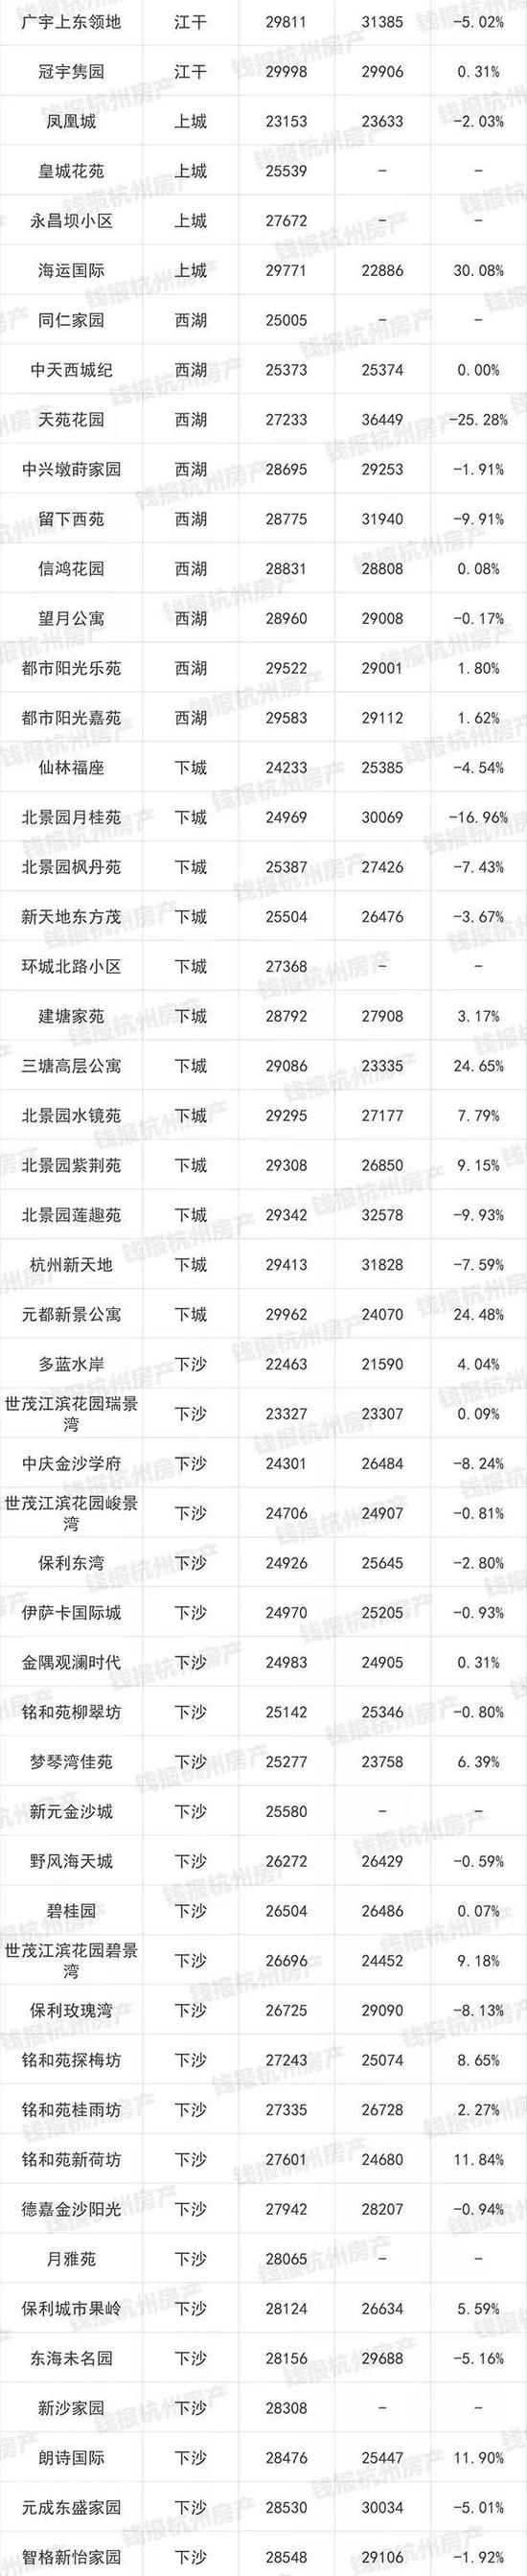 杭州1000多个二手房小区最新价格出炉(图)